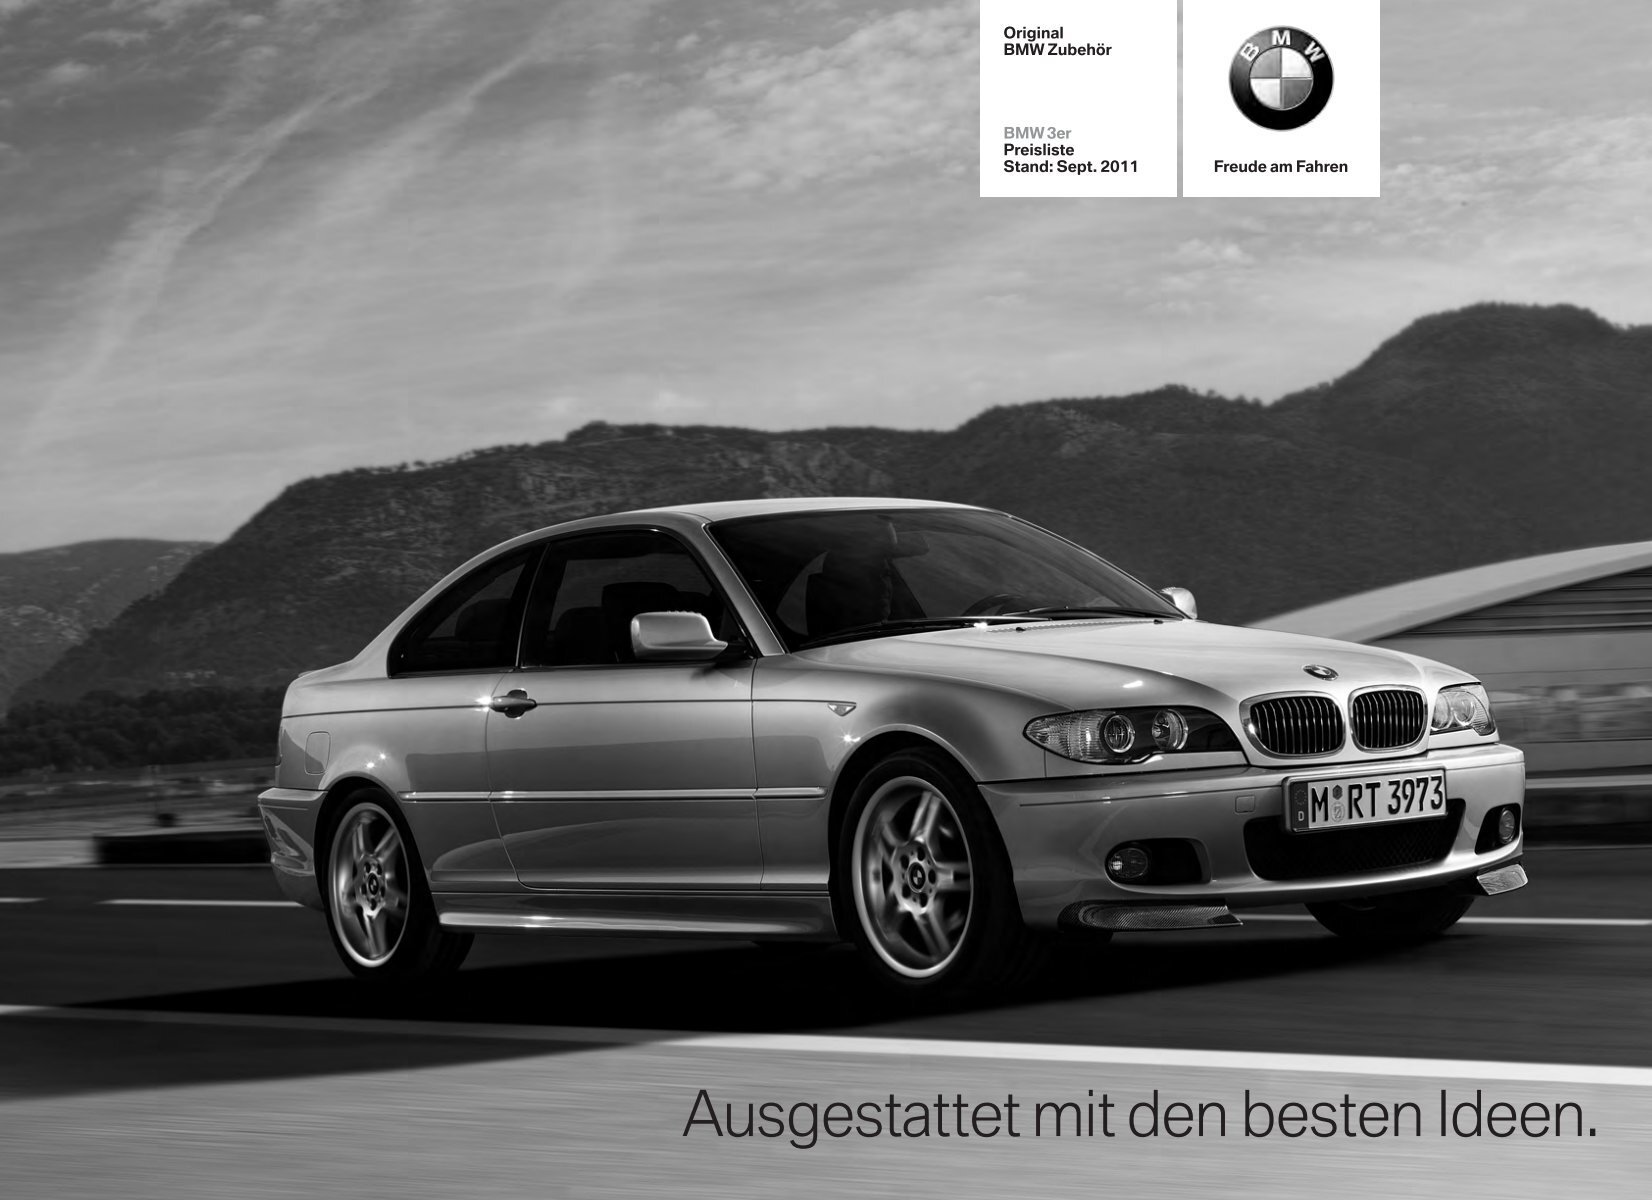 Ausgestattet mit den besten Ideen. - BMW Diplomatic Sales